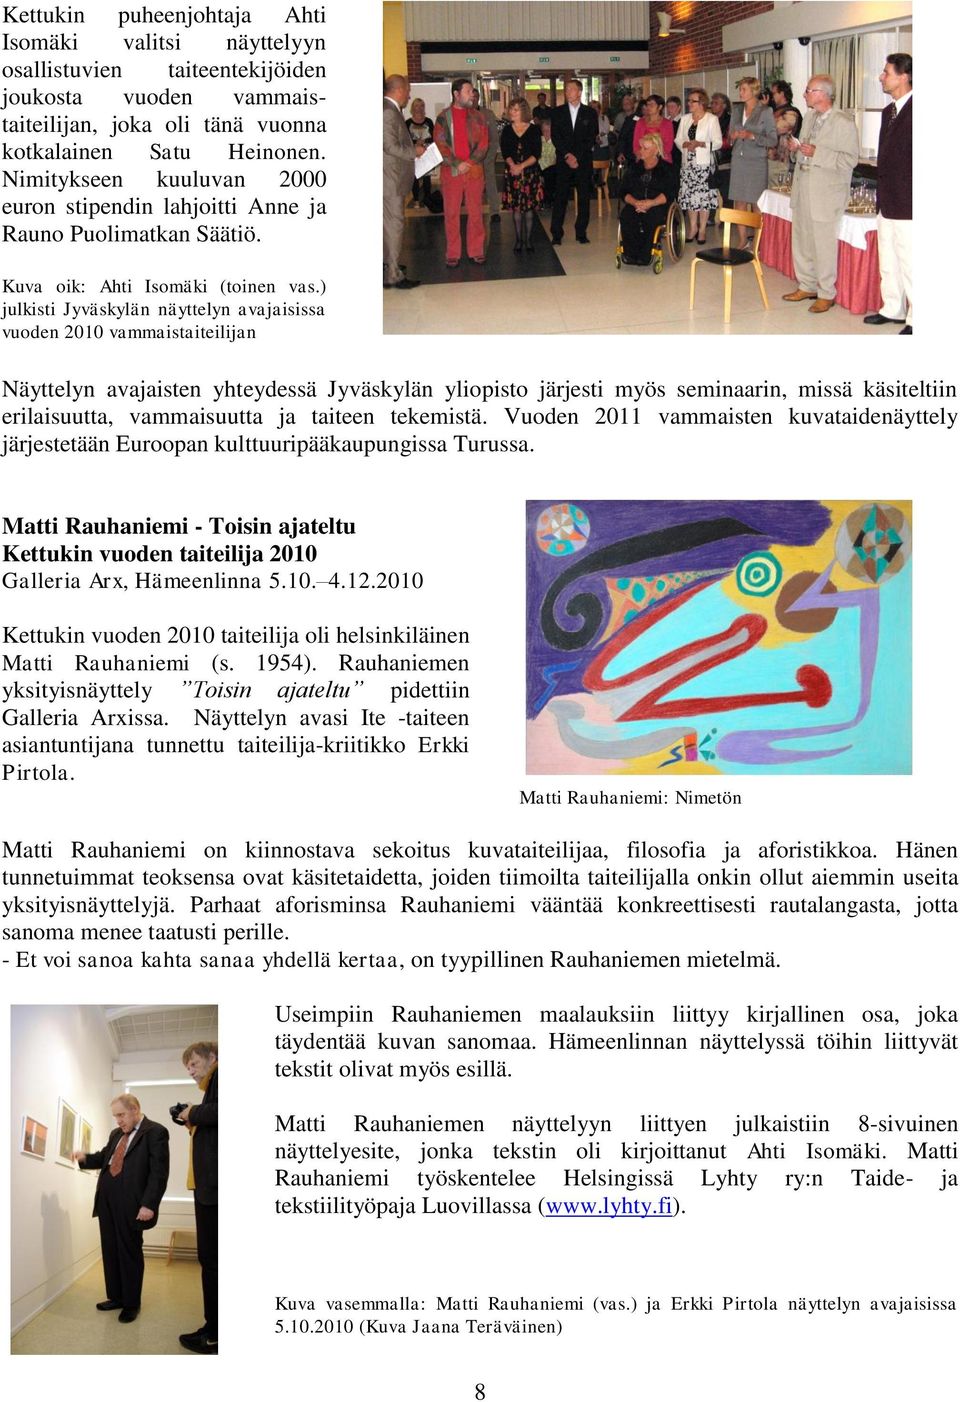 ) julkisti Jyväskylän näyttelyn avajaisissa vuoden 2010 vammaistaiteilijan Näyttelyn avajaisten yhteydessä Jyväskylän yliopisto järjesti myös seminaarin, missä käsiteltiin erilaisuutta, vammaisuutta